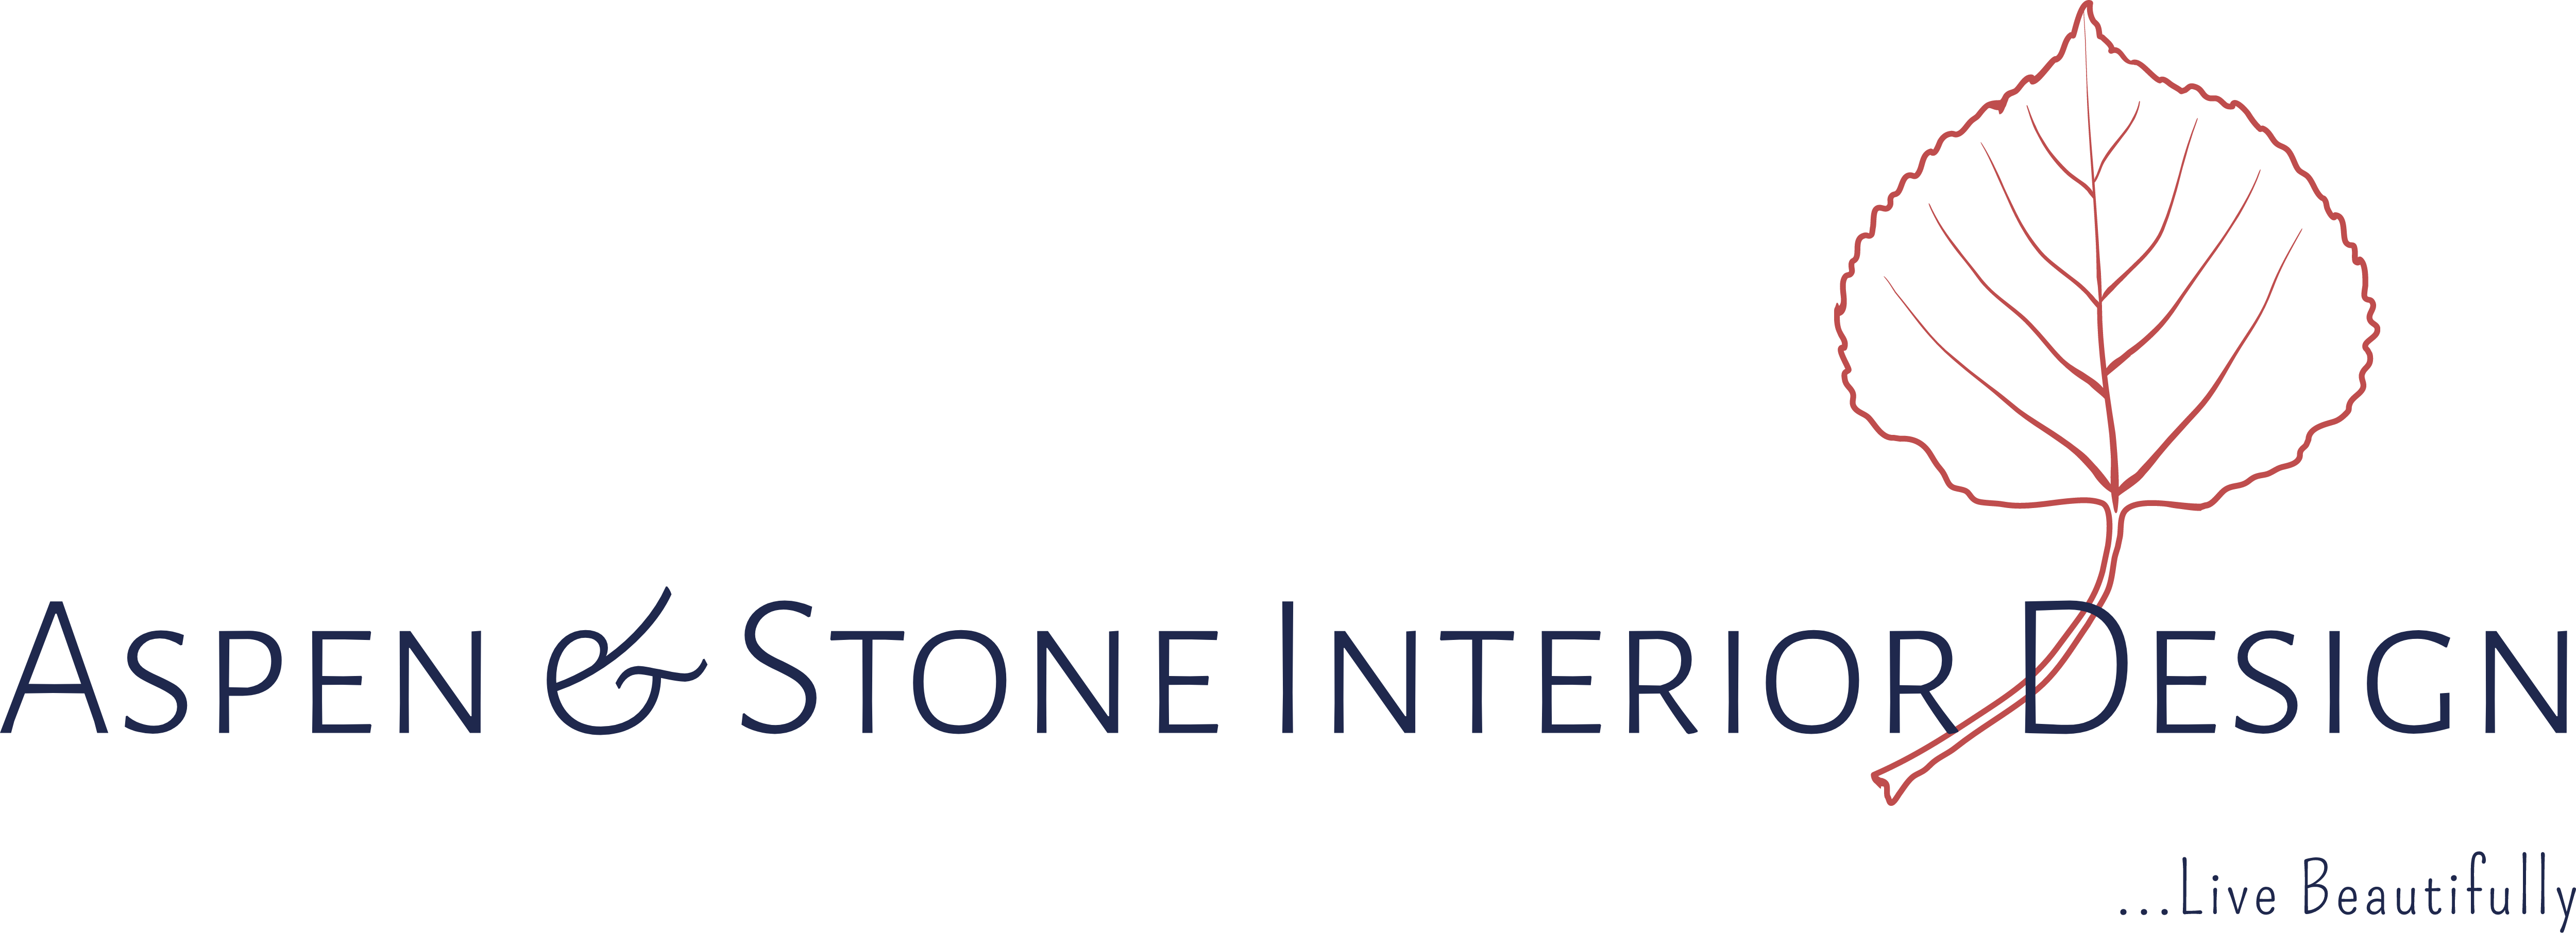 Aspen & Stone Interior Design LLC